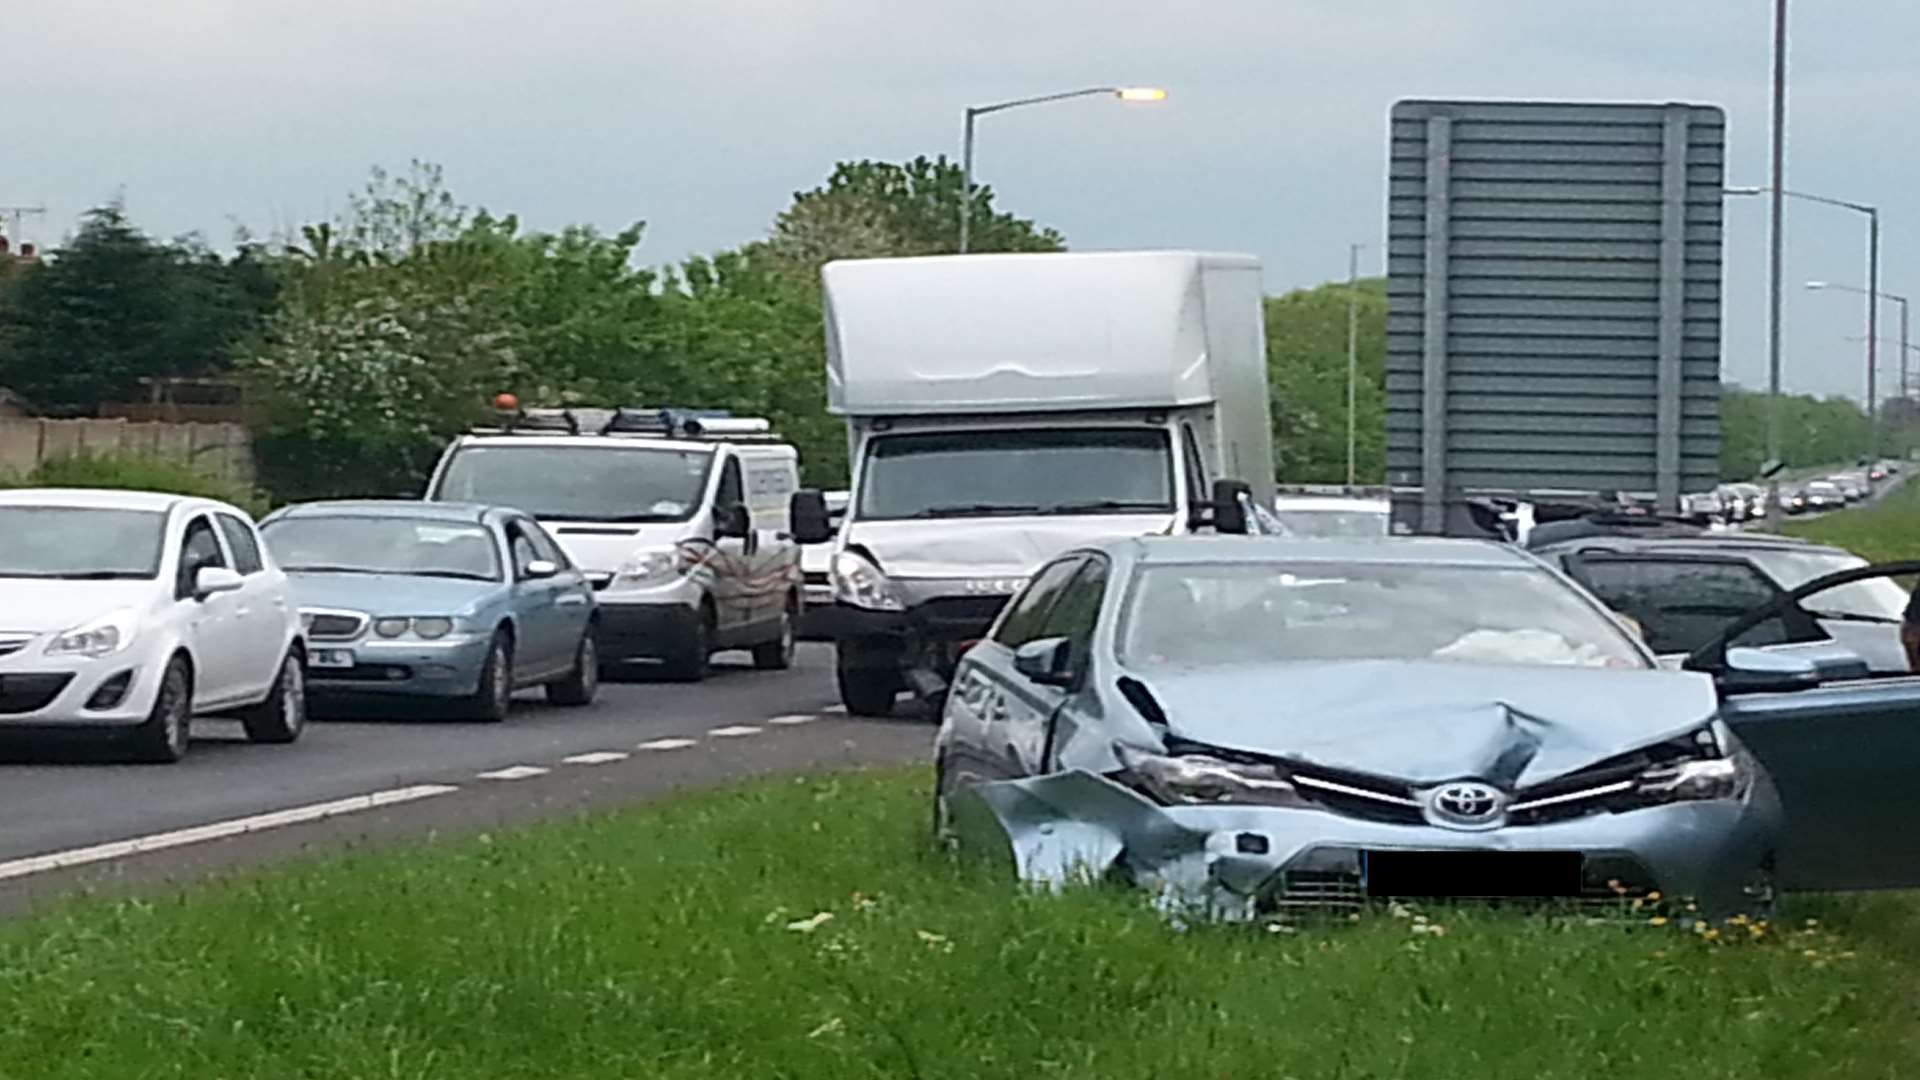 Scene of the crash